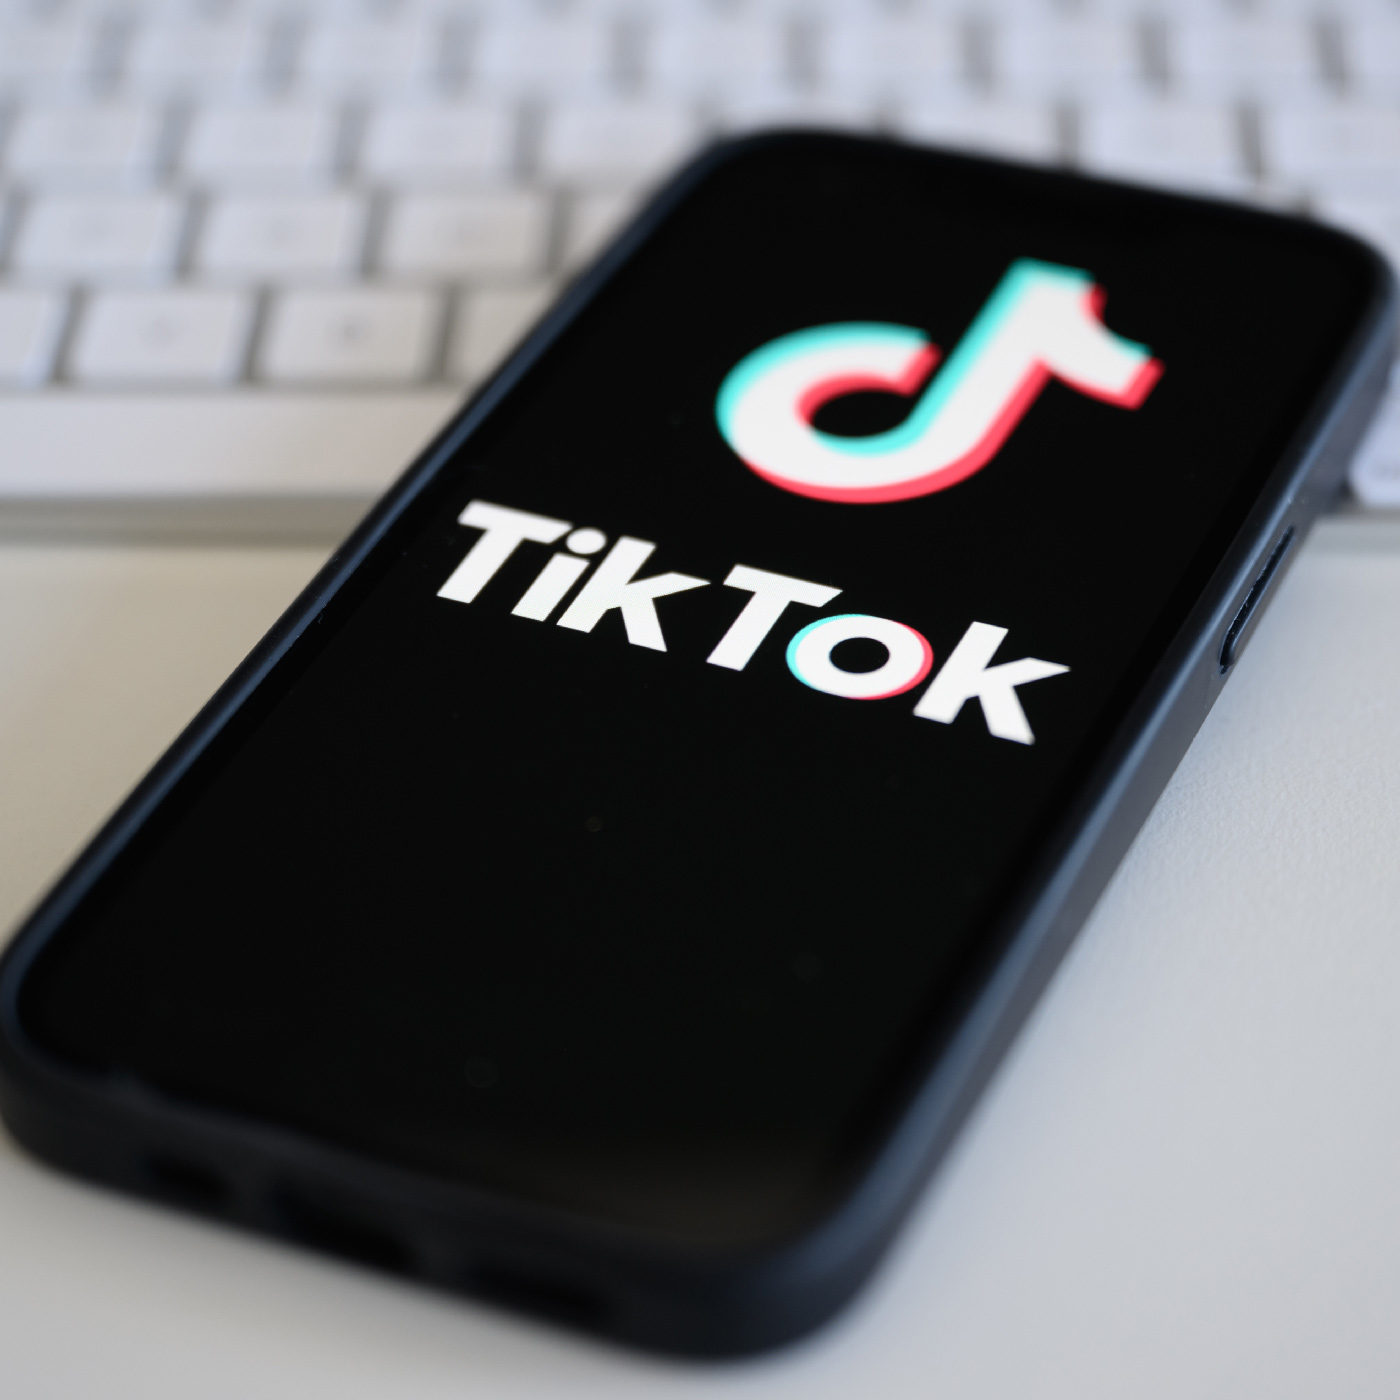 ”Hybride Kriegsführung” per App: Sollte TikTok verboten werden?